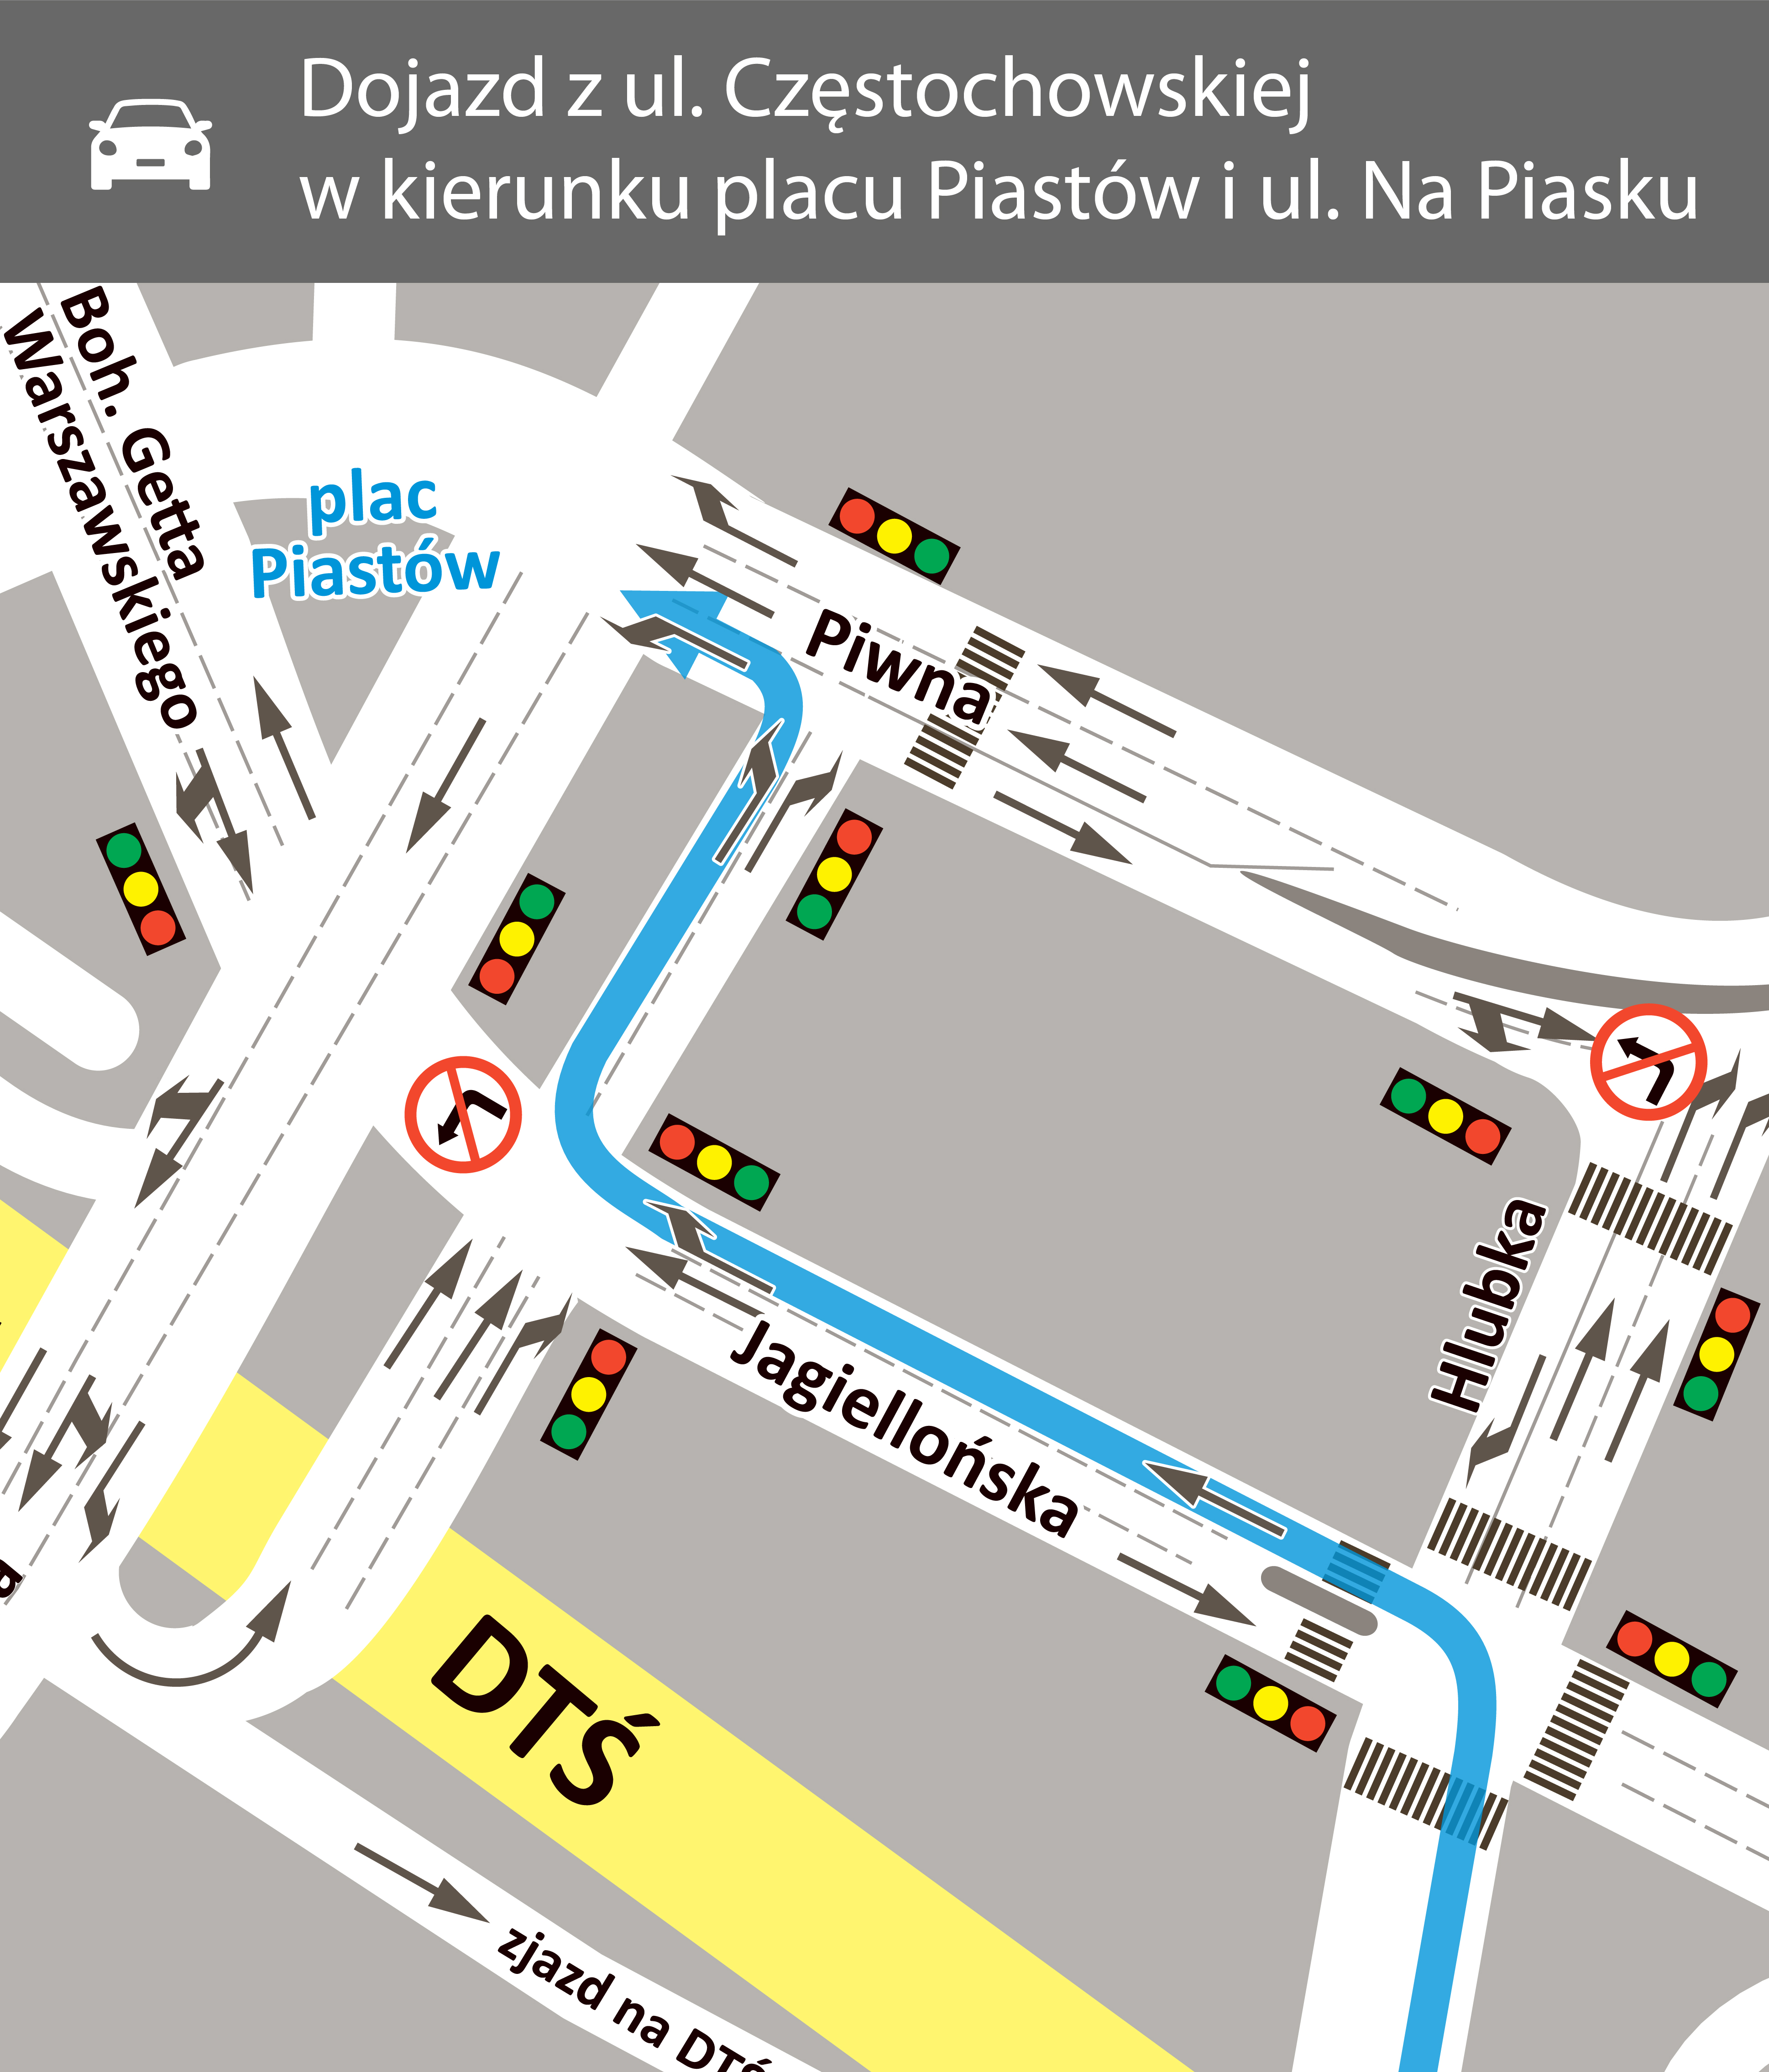 Dojazd z ulicy Częstochowskiej do placu Piastów